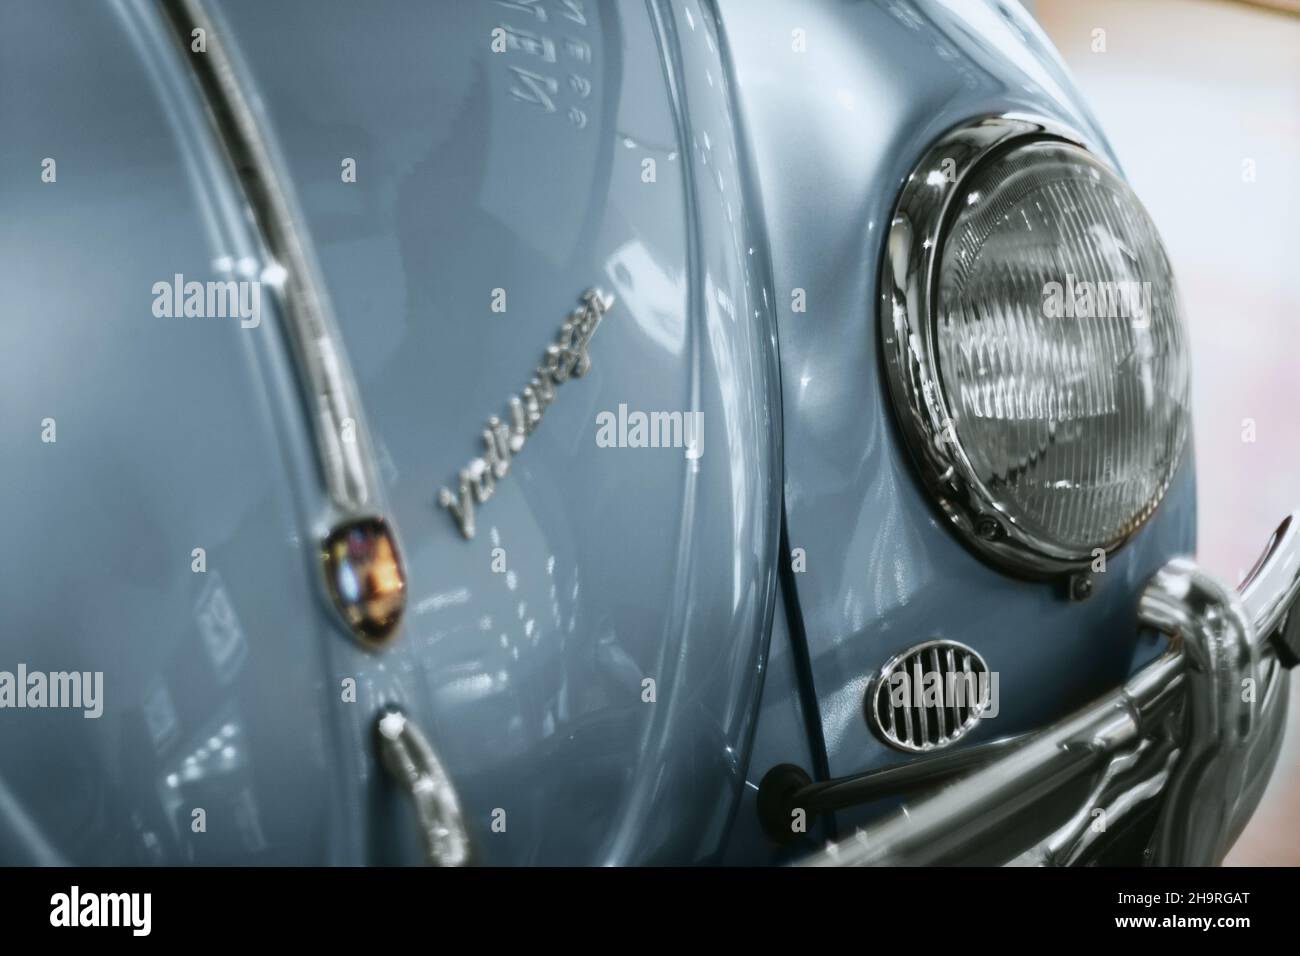 Izmir, Turquie - 21 juin 2021 : gros plan d'une voiture bleue de coléoptère Volkswagen produite en 1963.Éditorial tourné à Izmir Turquie. Banque D'Images